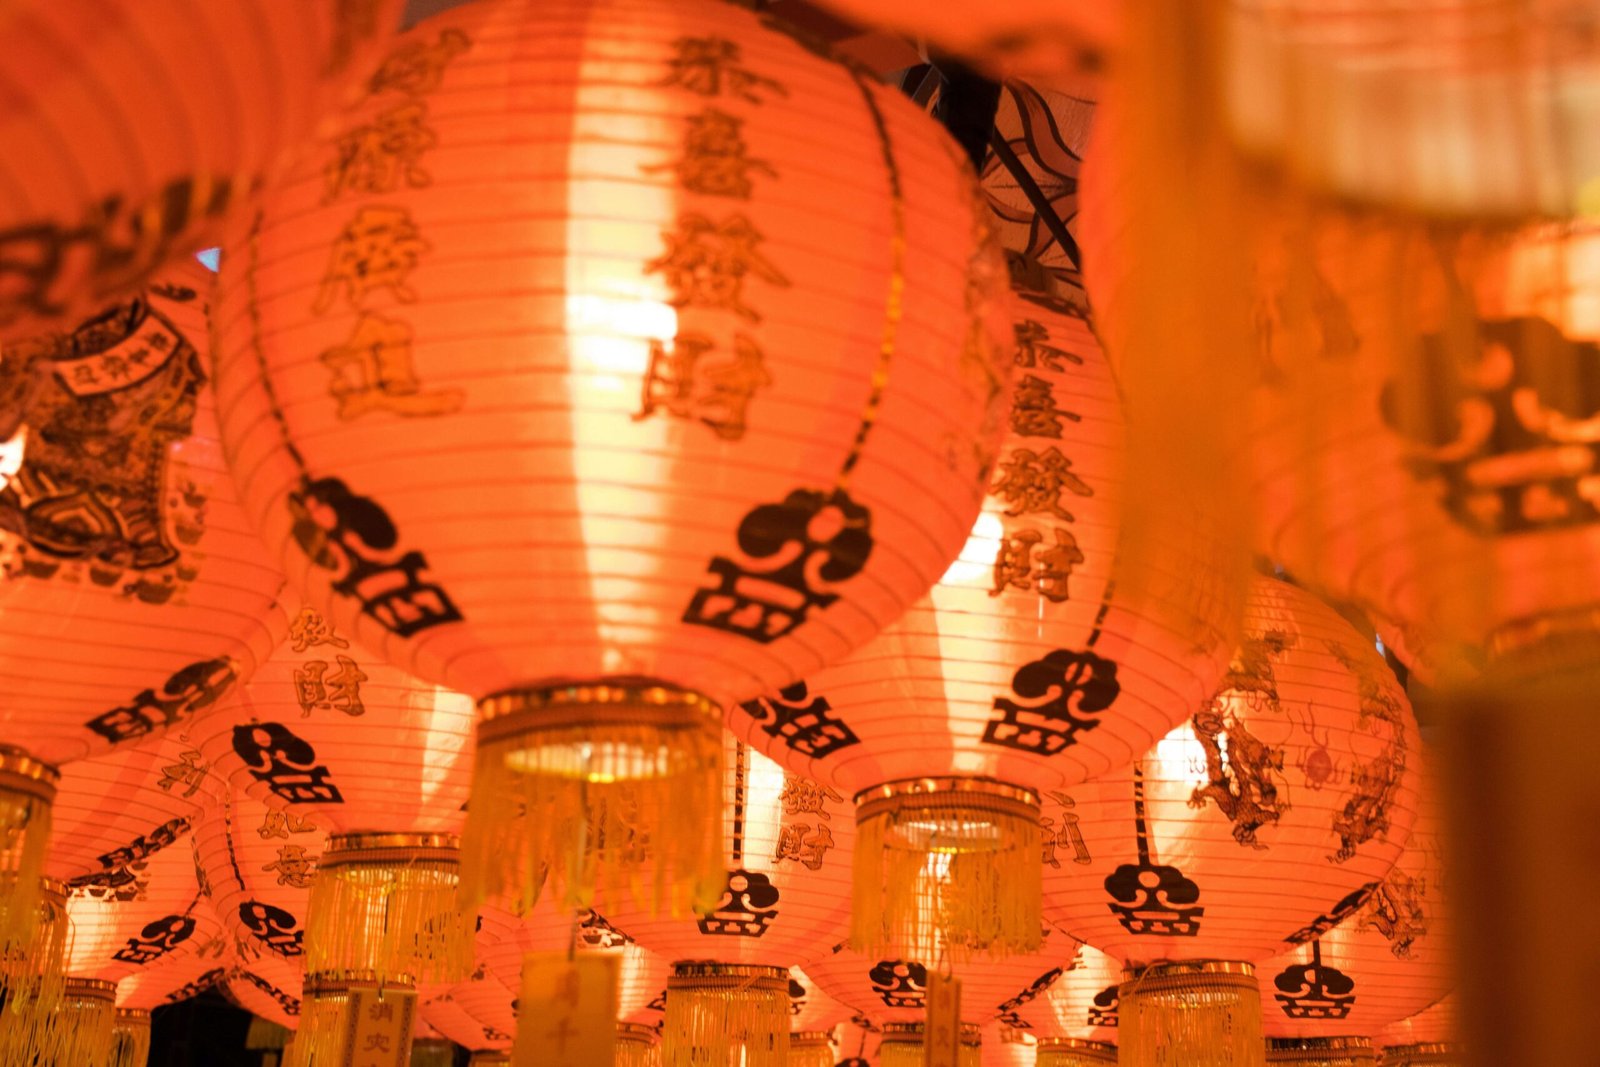 Chinese New Year, festivals around the world